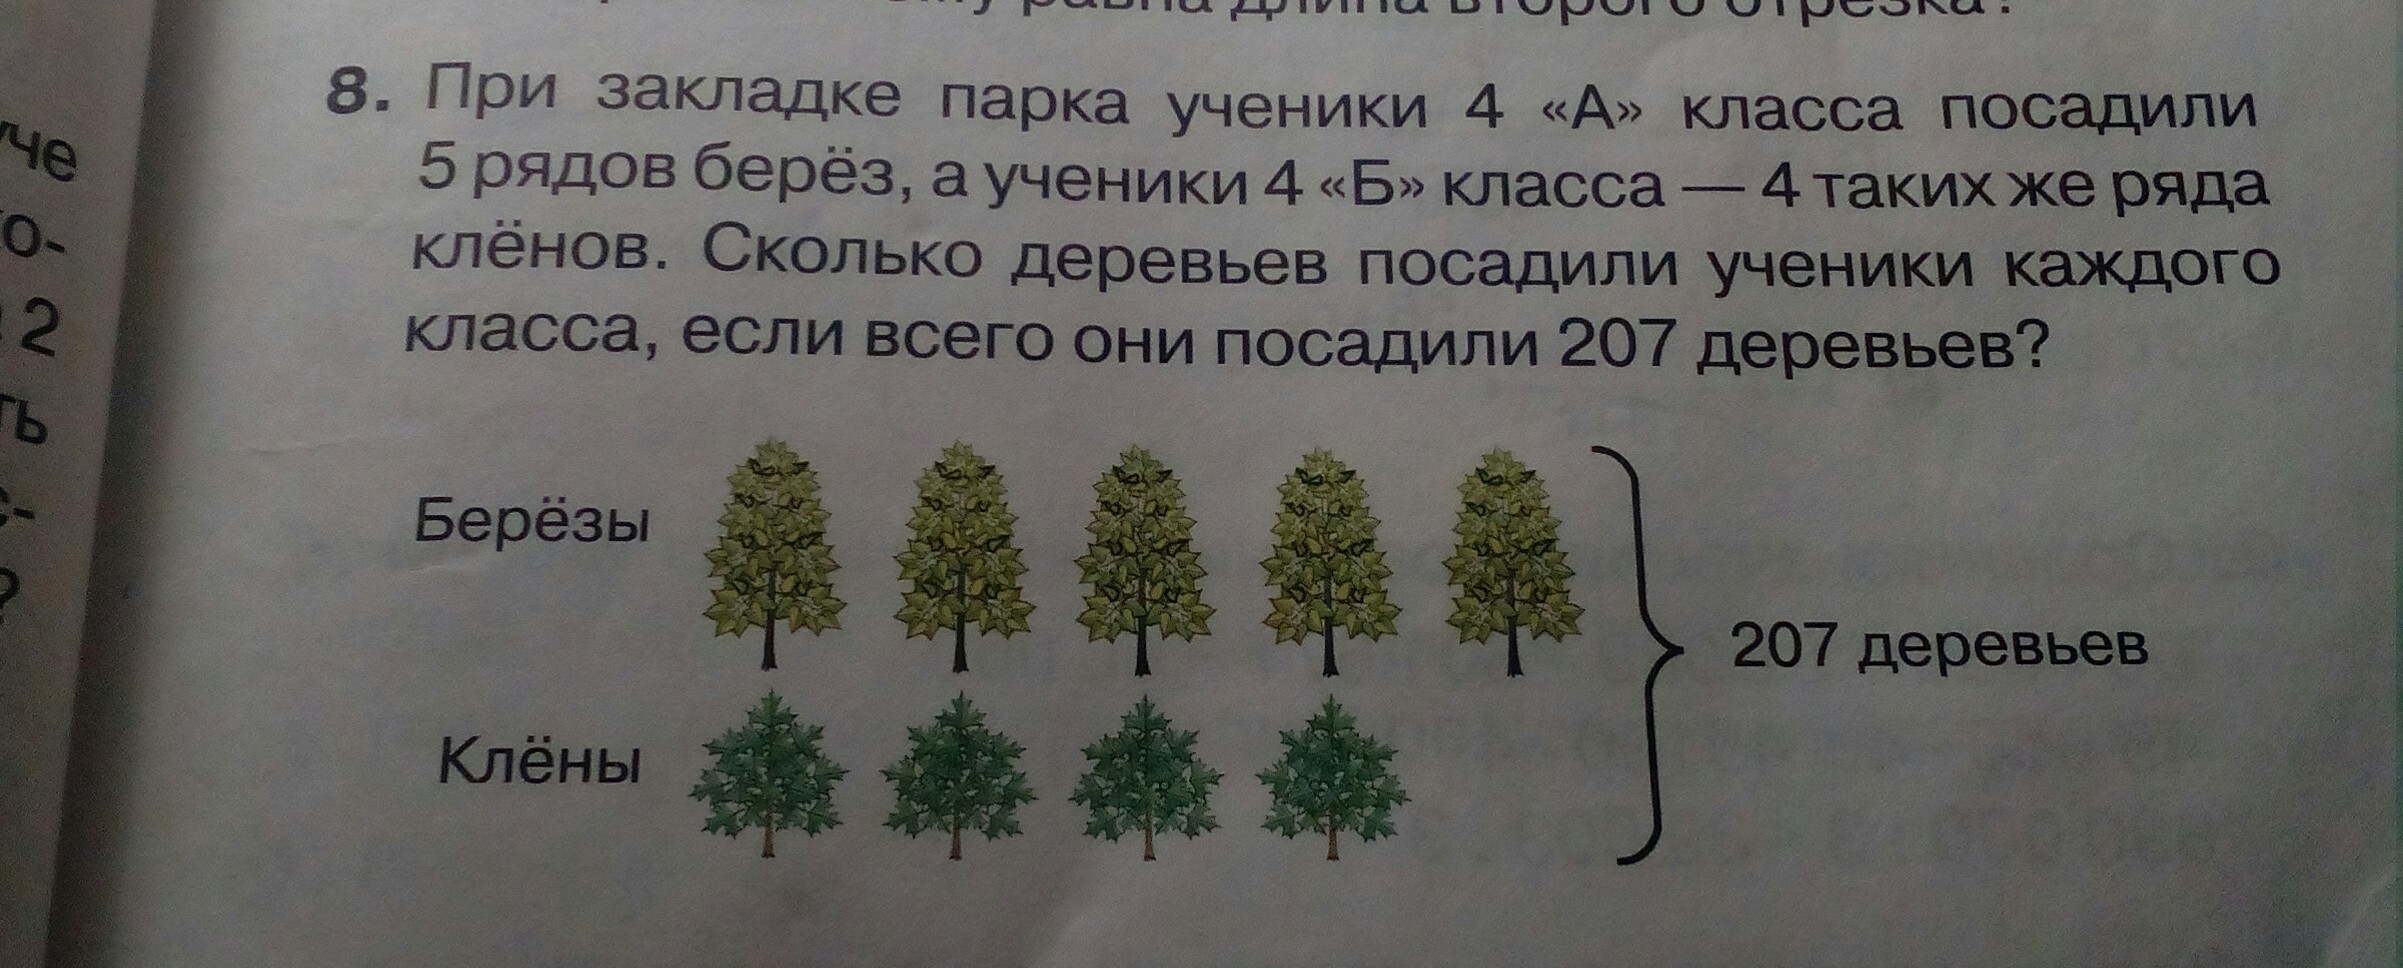 Сколько берез в каждом ряду. Ряд деревьев в парке. Три класса школьников сажали деревья первый. Задание посади елочки. 6 Рядов деревьев.